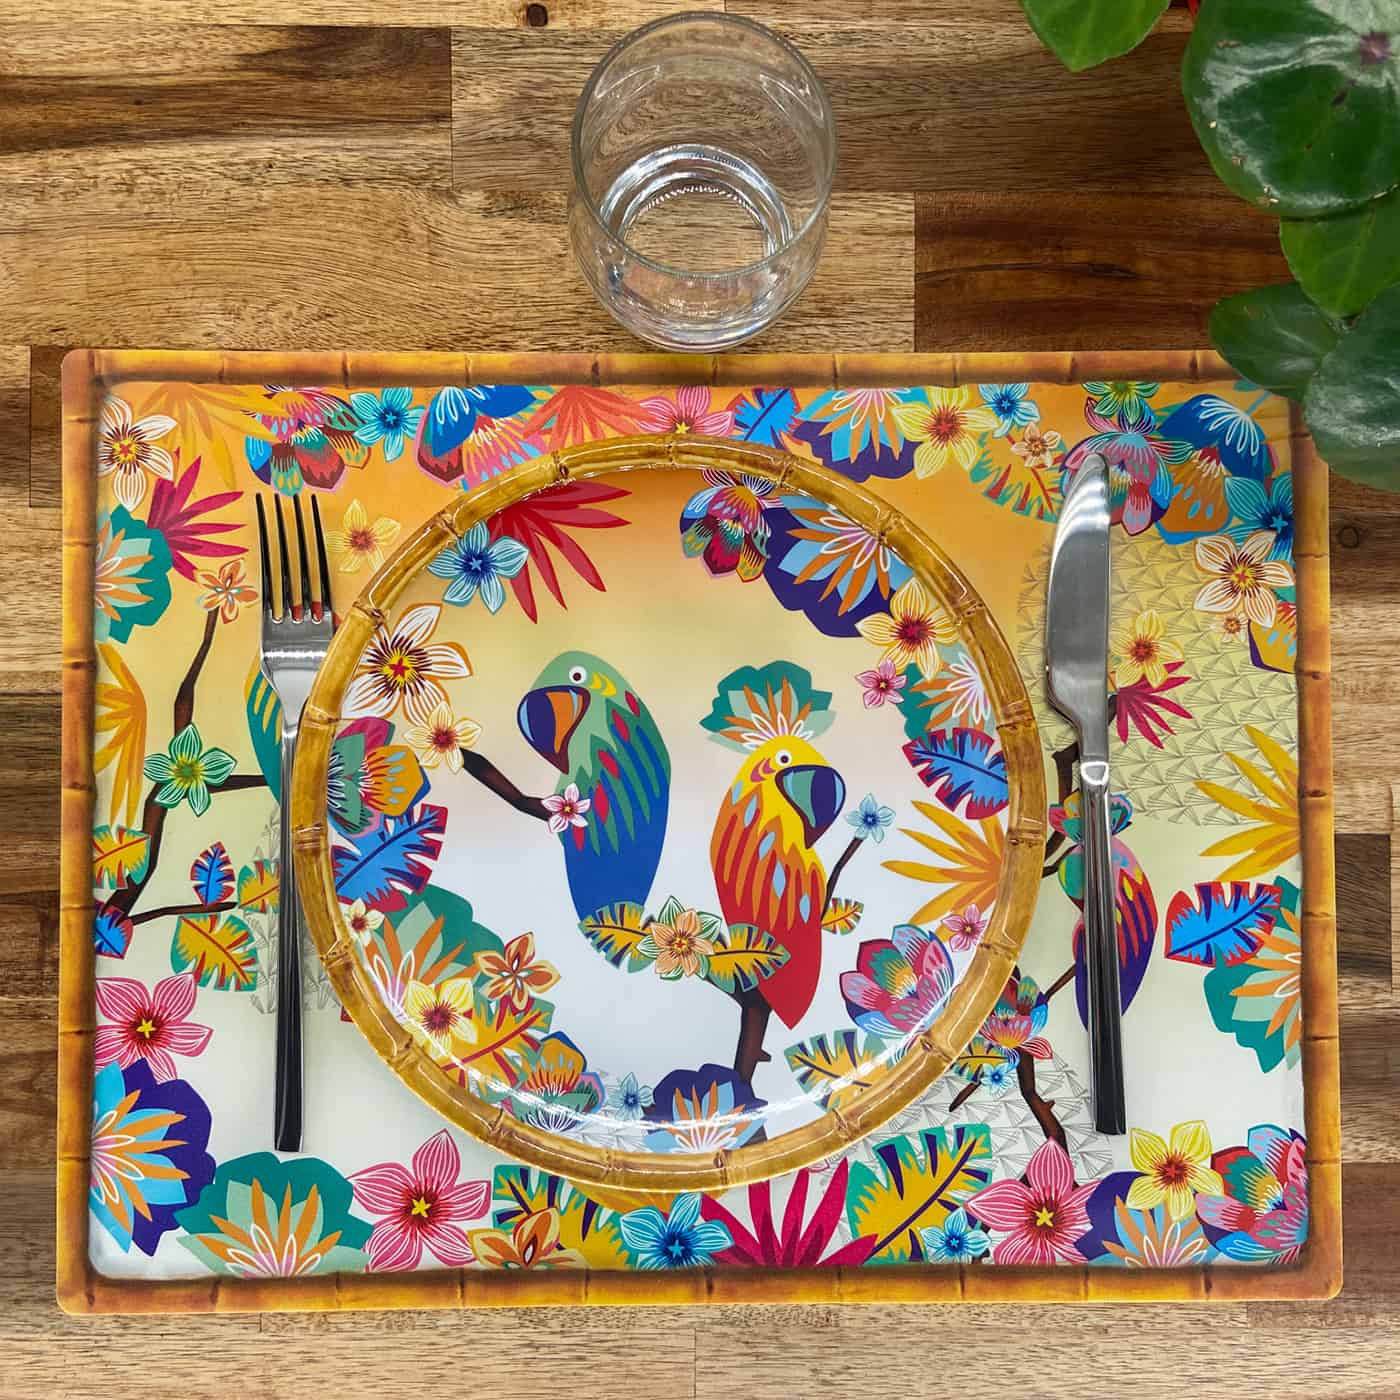 Tischset (40 x 30 cm) verkauft bei 6 - Papageien von Bahia thema